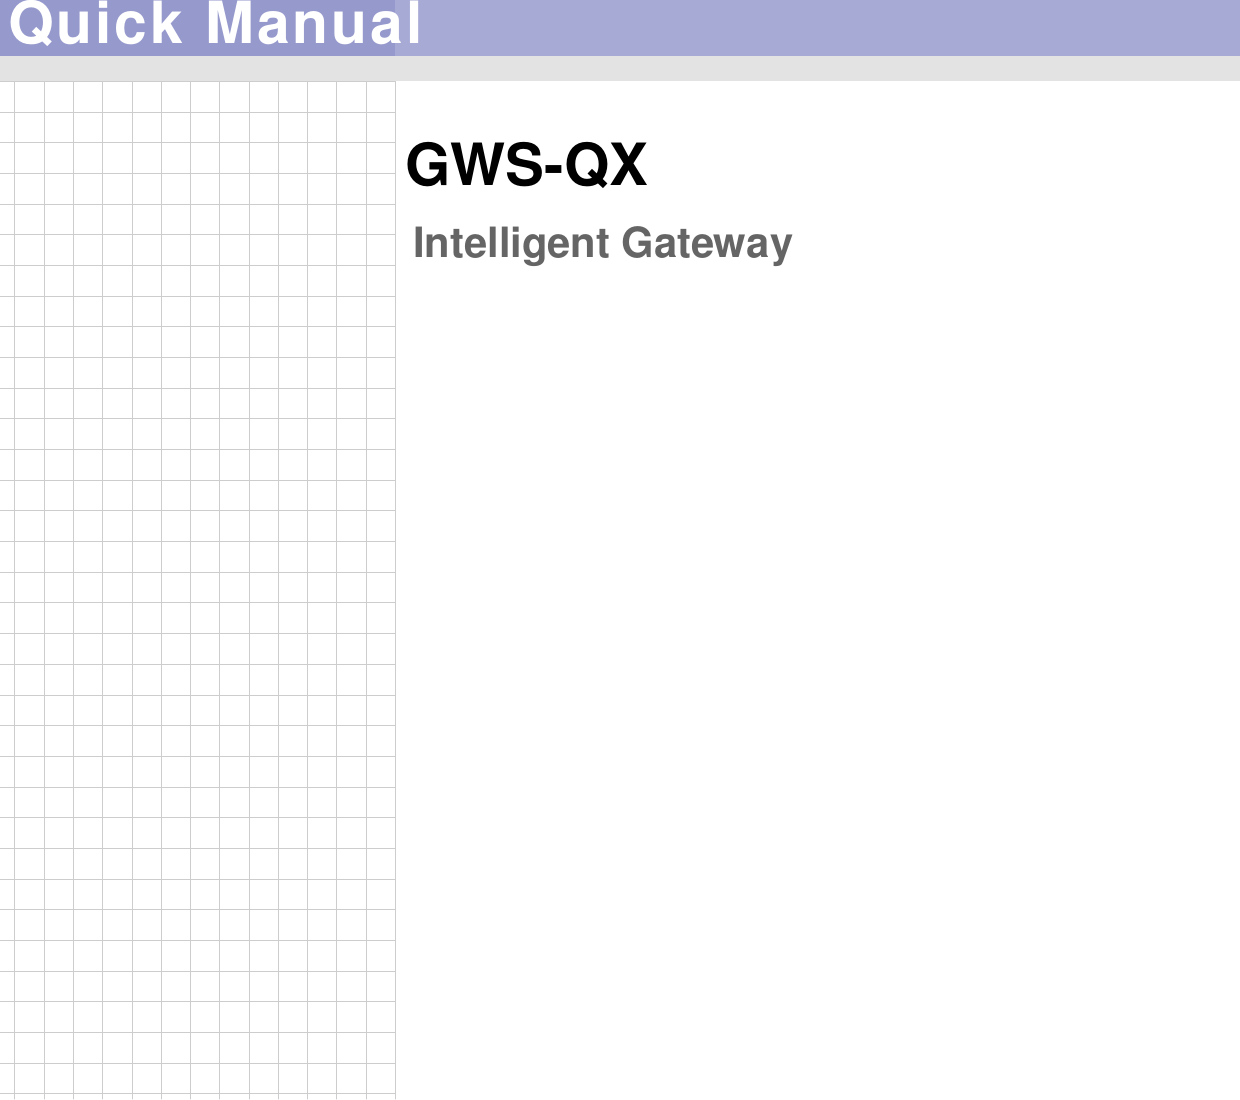                                                                                          Quick Manual Intelligent Gateway GWS-QX   